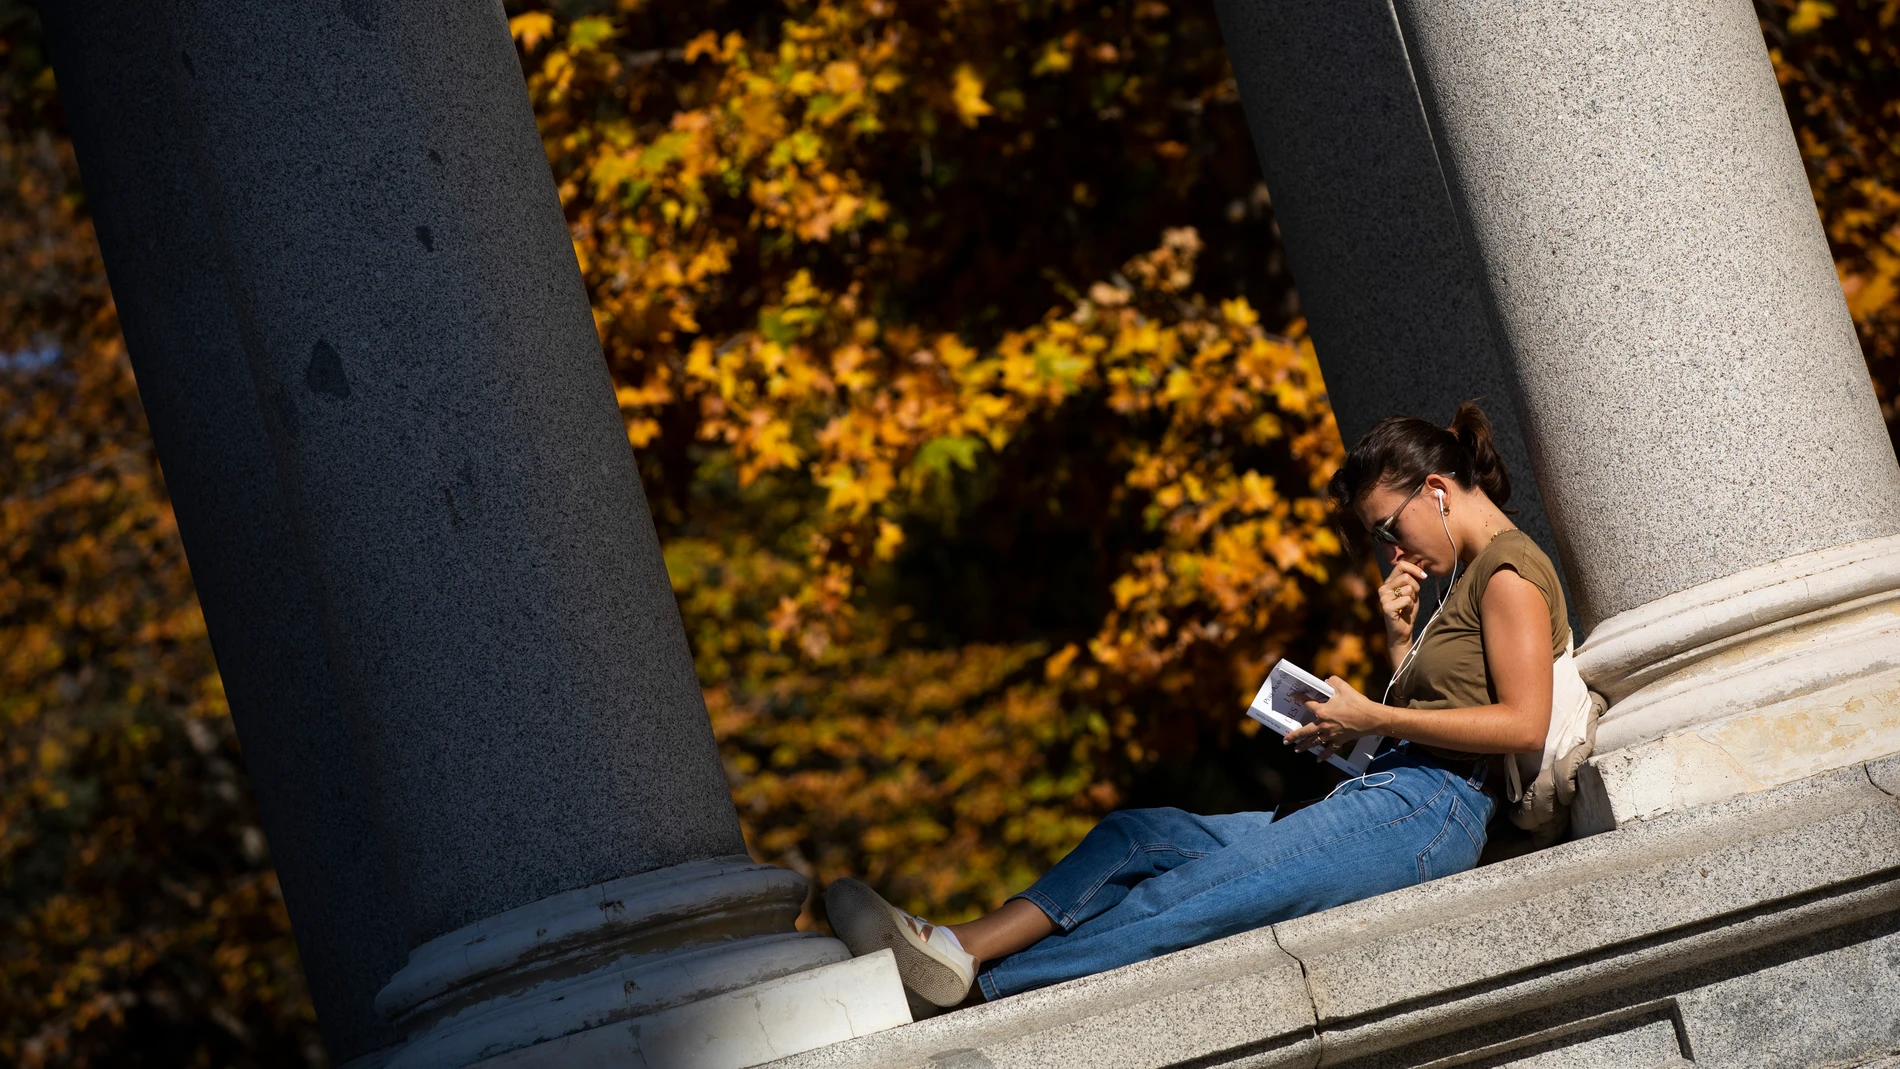 Otoño en el Parque del Retiro. Día de altas temperaturas y buen tiempo a pesar de las fechas. Una joven lee un libro y escucha música al sol. © Jesús G. Feria.